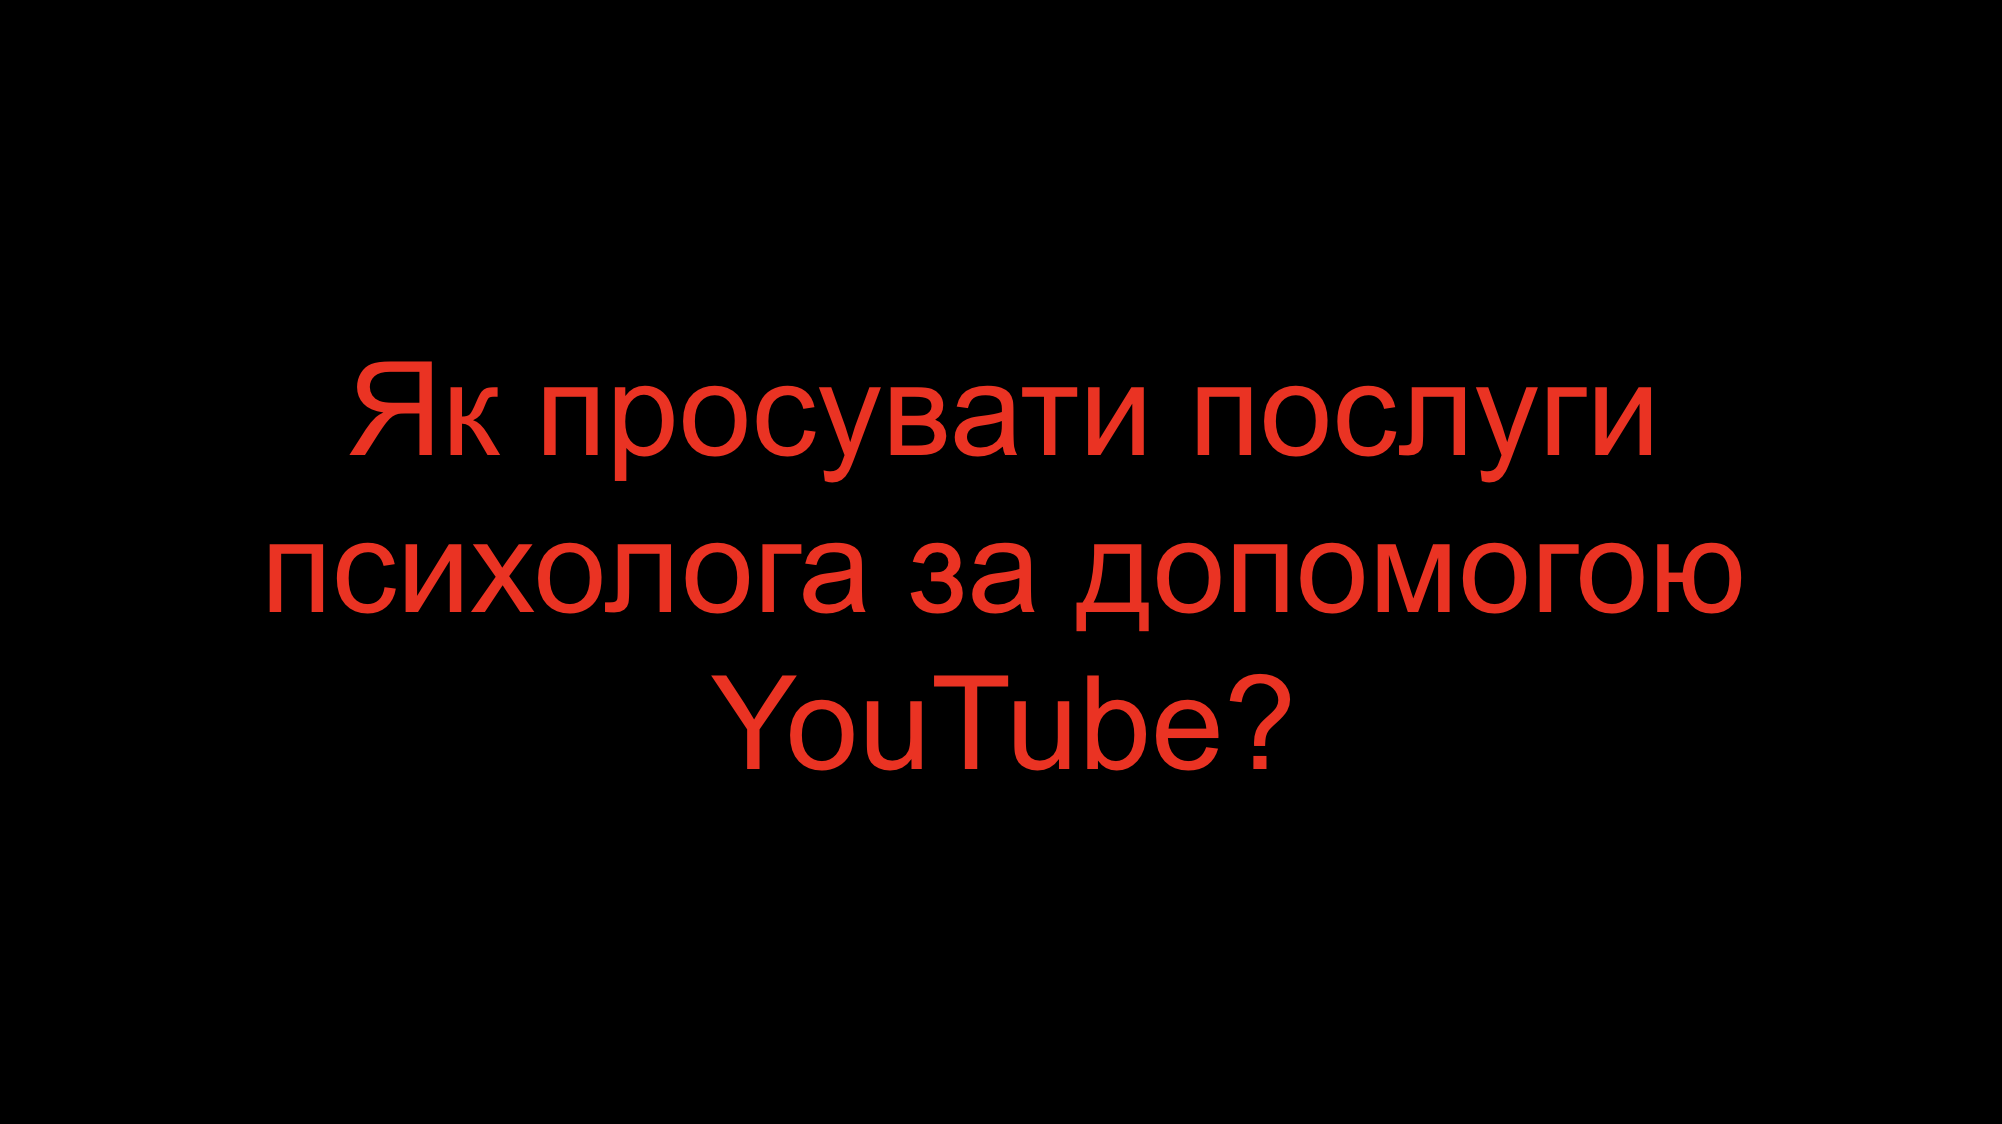 You are currently viewing Як просувати послуги психолога за допомогою YouTube?